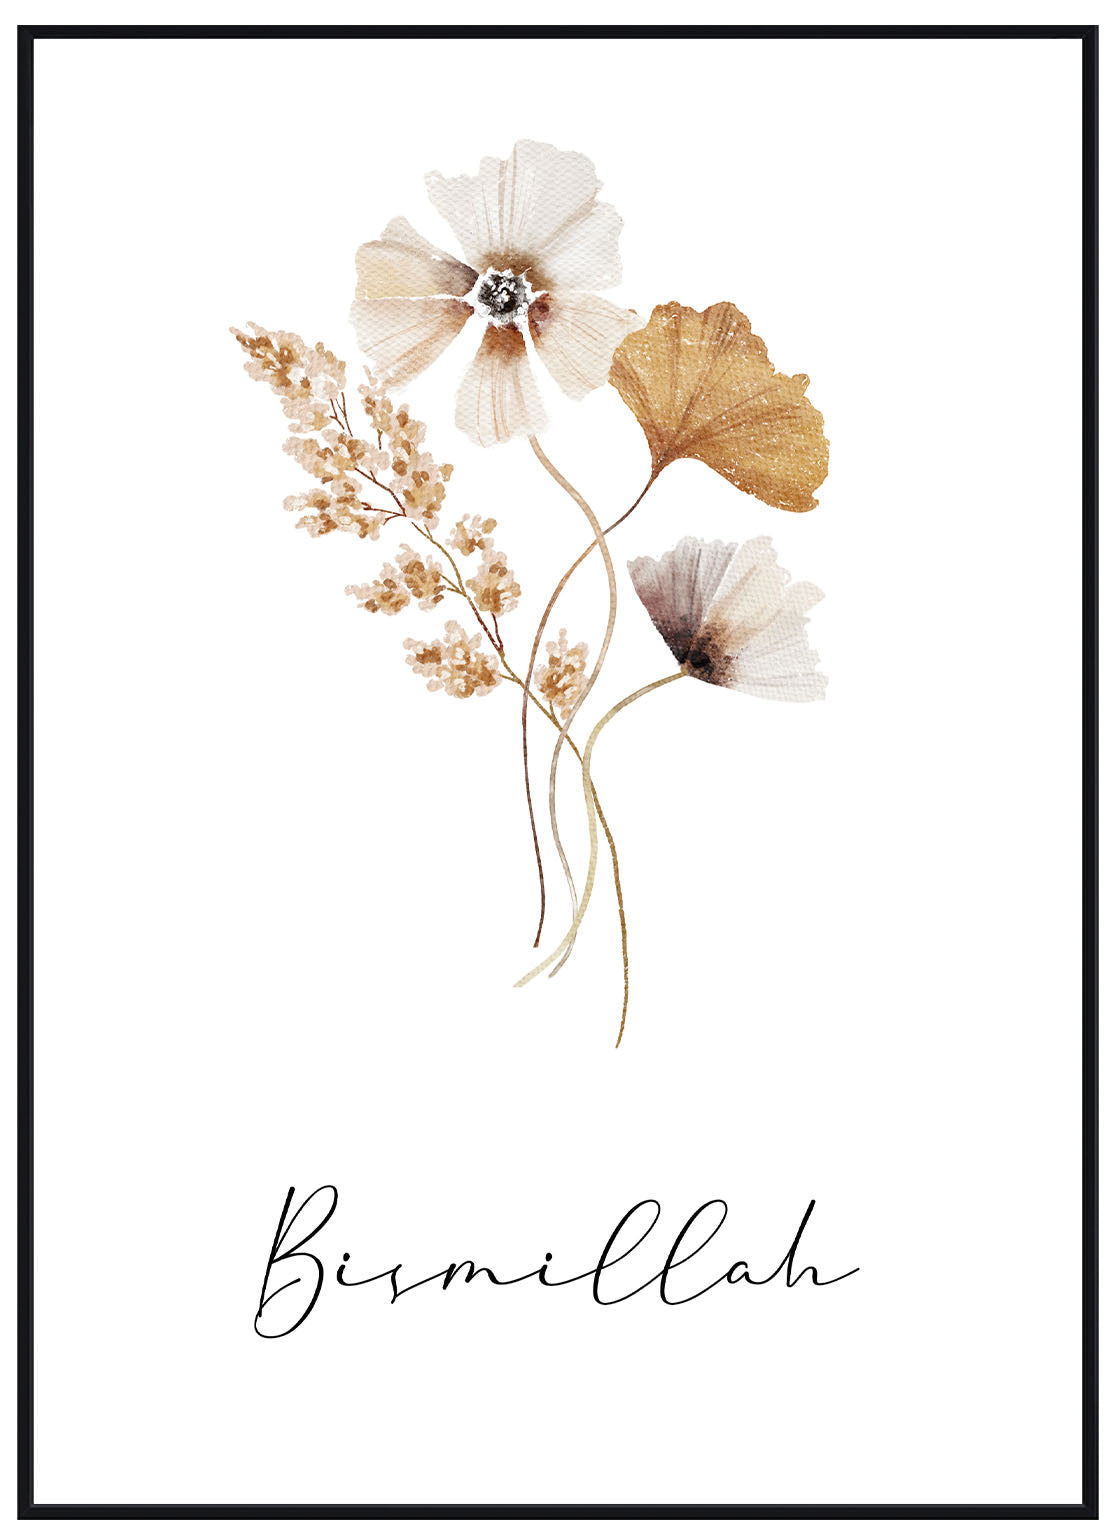 Bismillah Flower